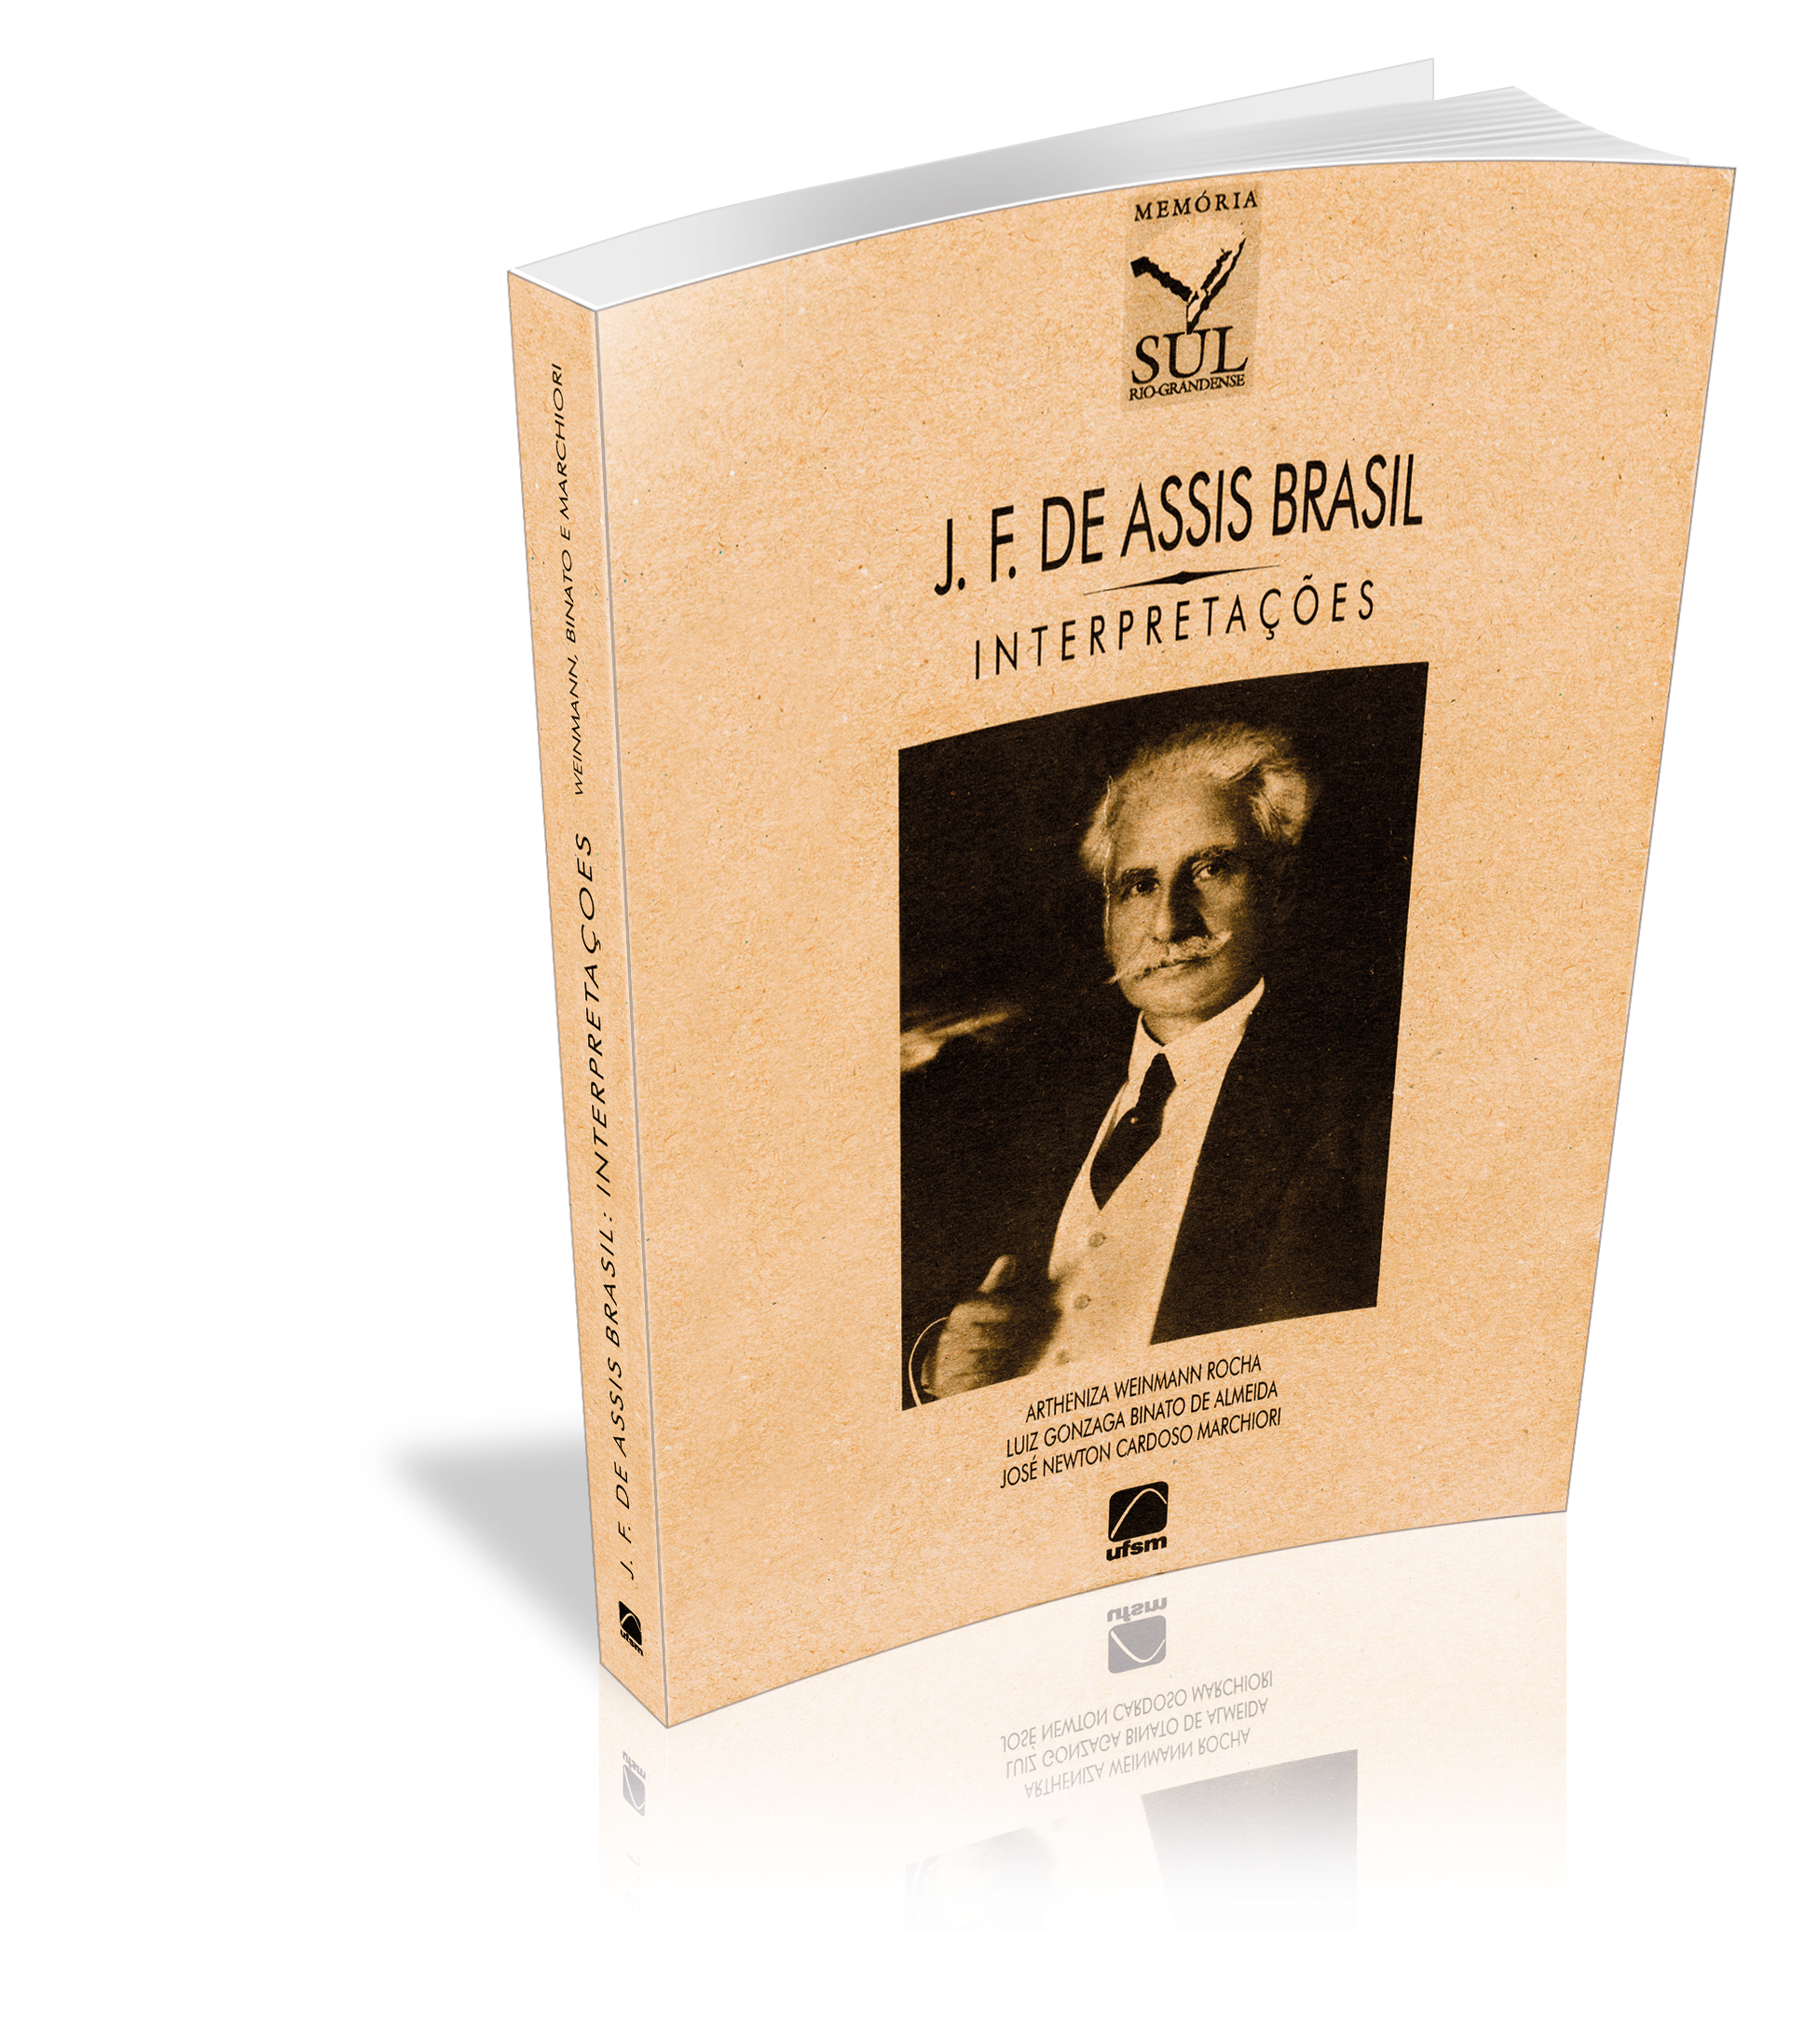 Capa do livro J. F. de Assis Brasil: Interpretações